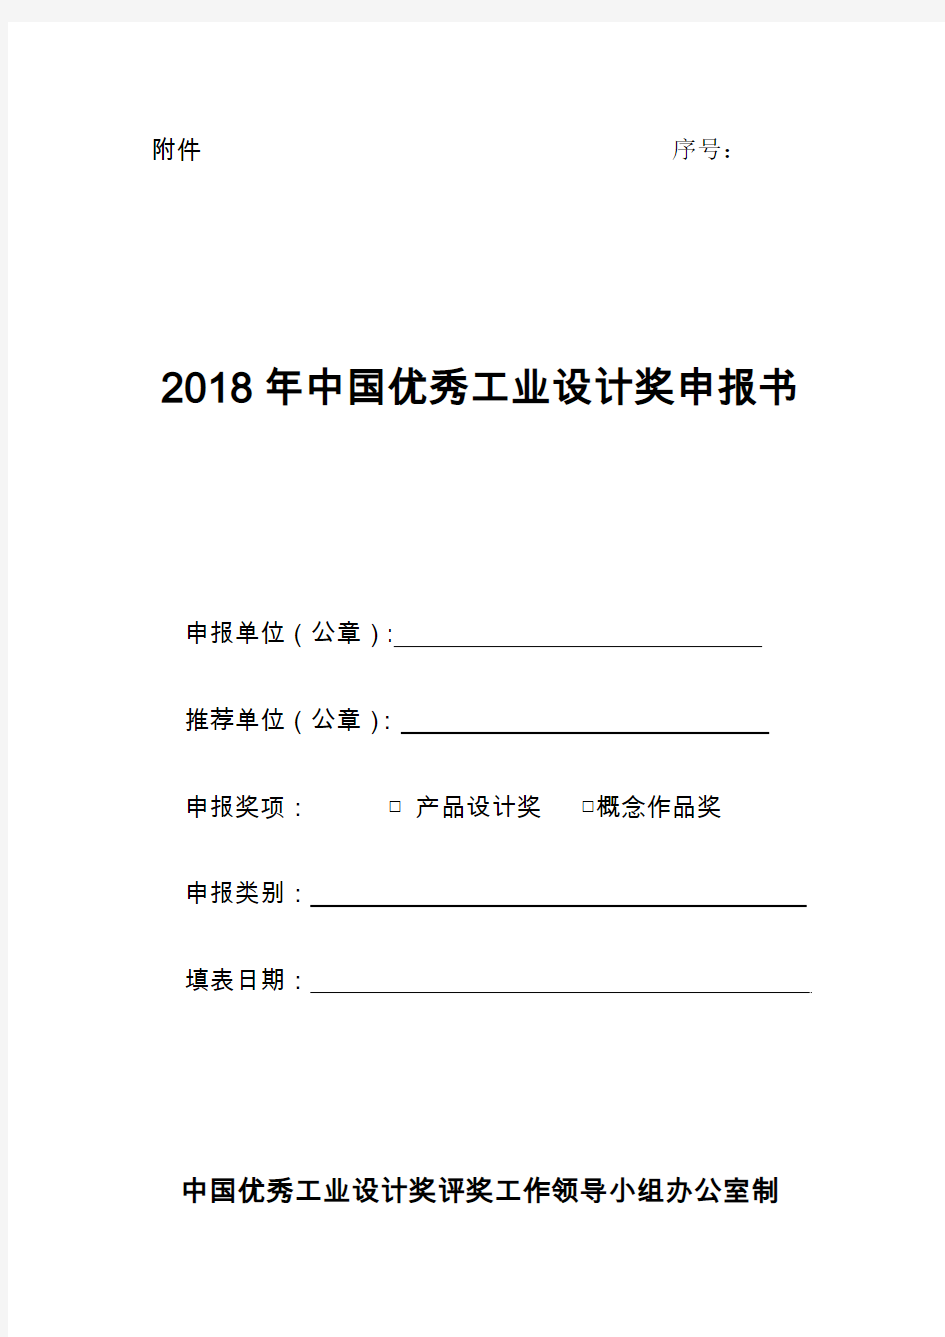 2018年中国优秀工业设计奖申报书